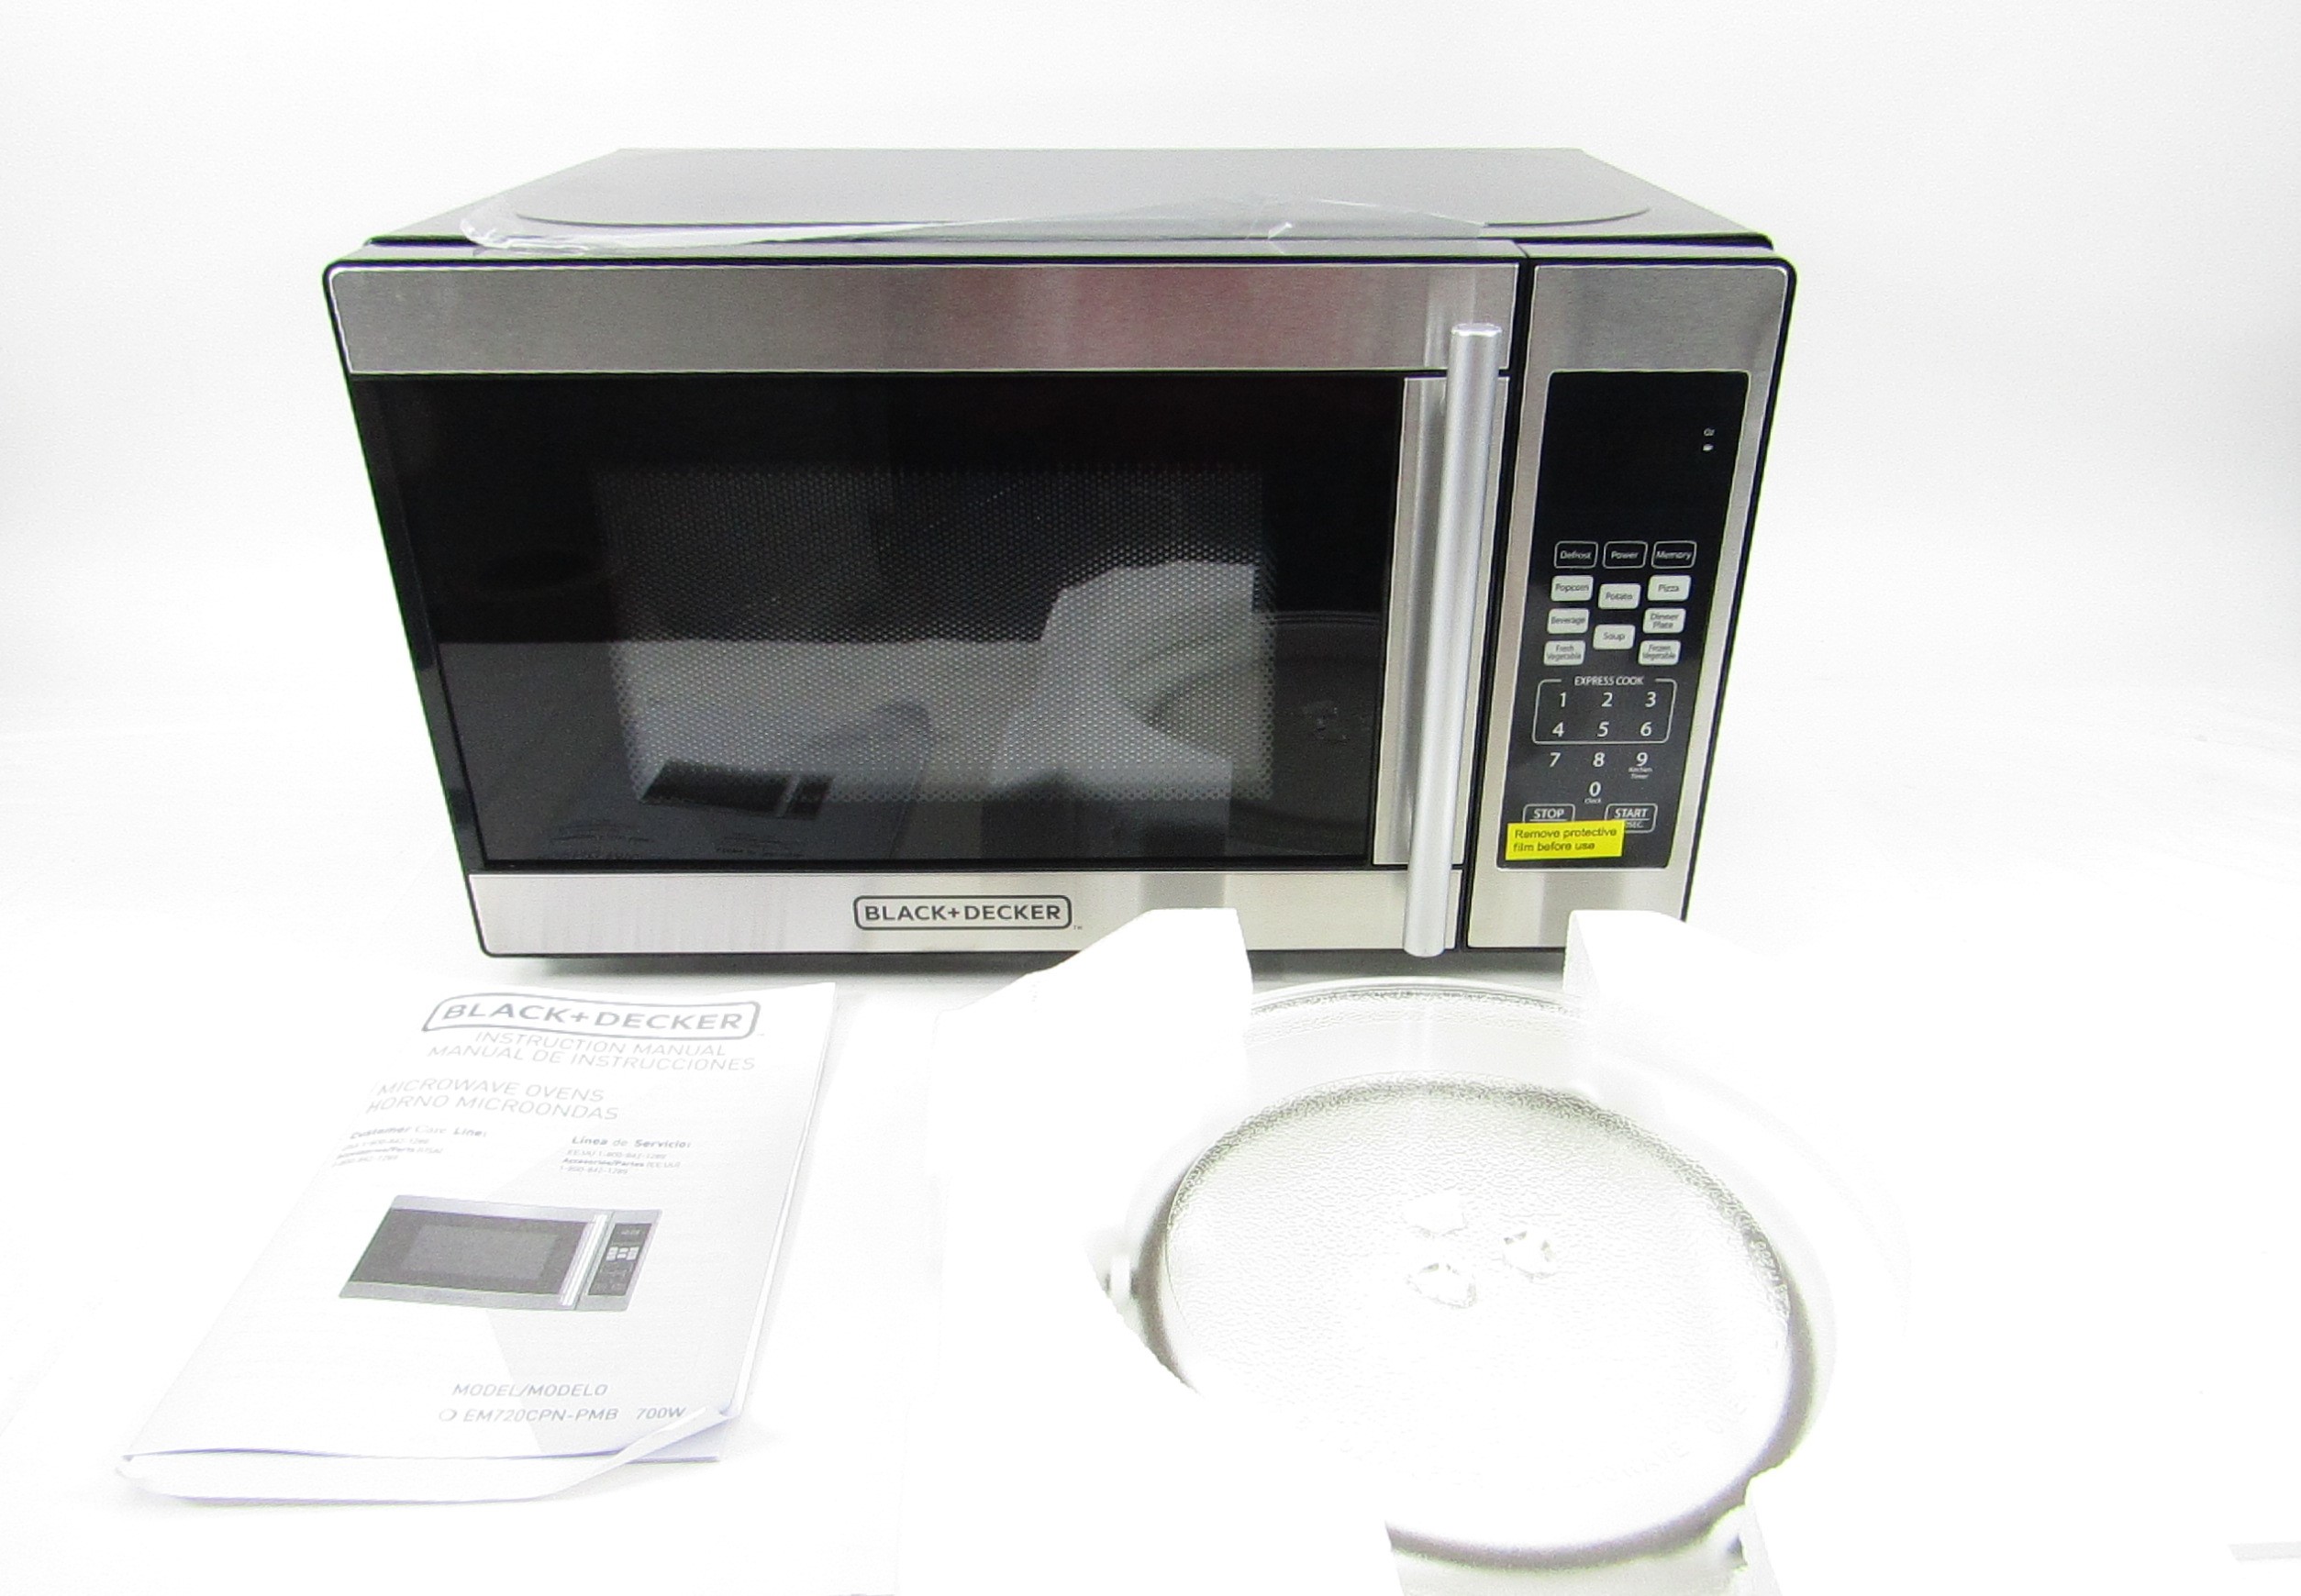 Black+Decker 0.7 Cu. Ft. 700W Stainless Steel Countertop Microwave